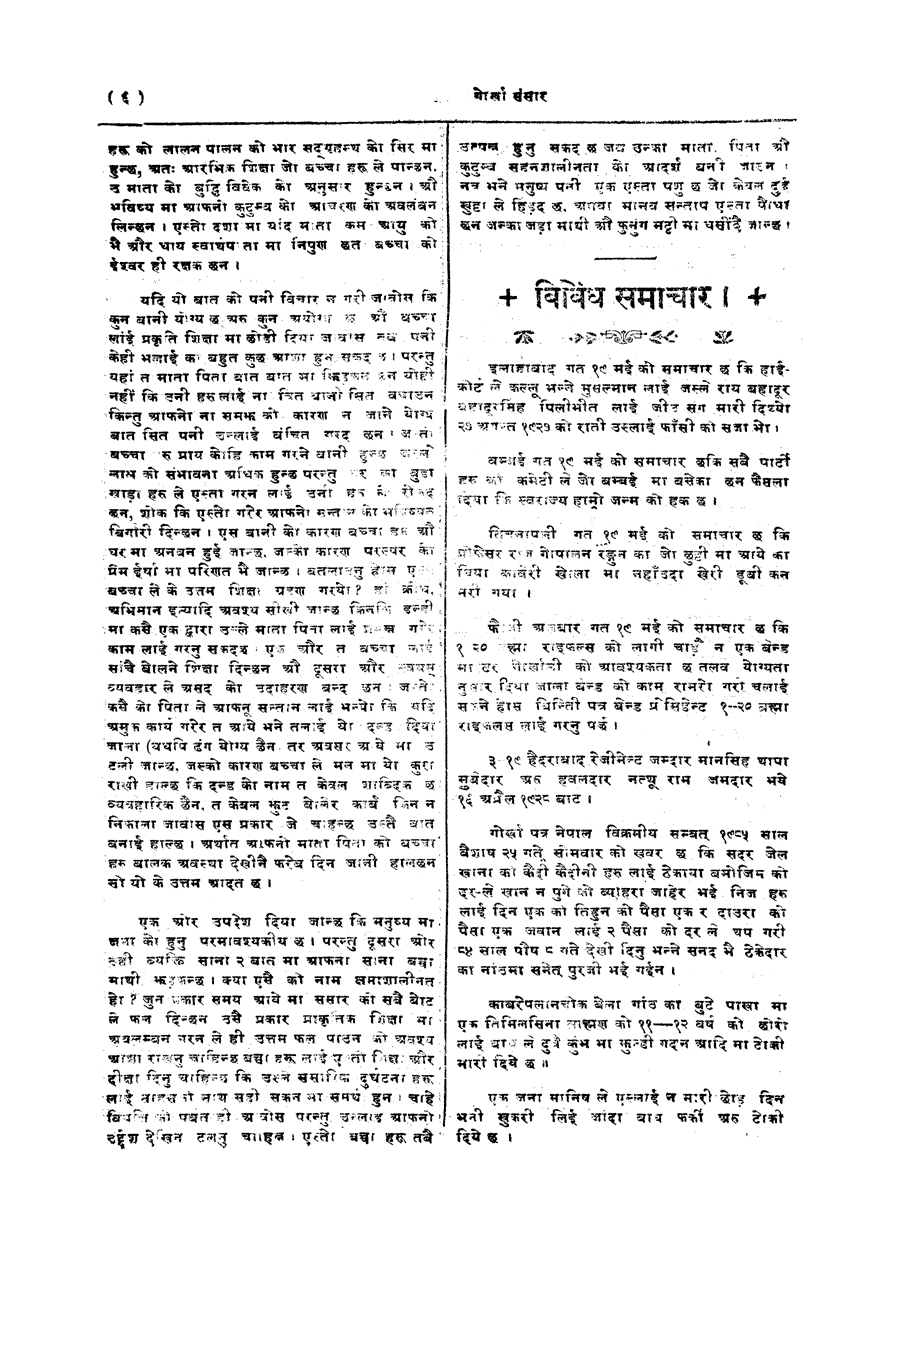 Gorkha Sansar, 25 May 1928, page 6